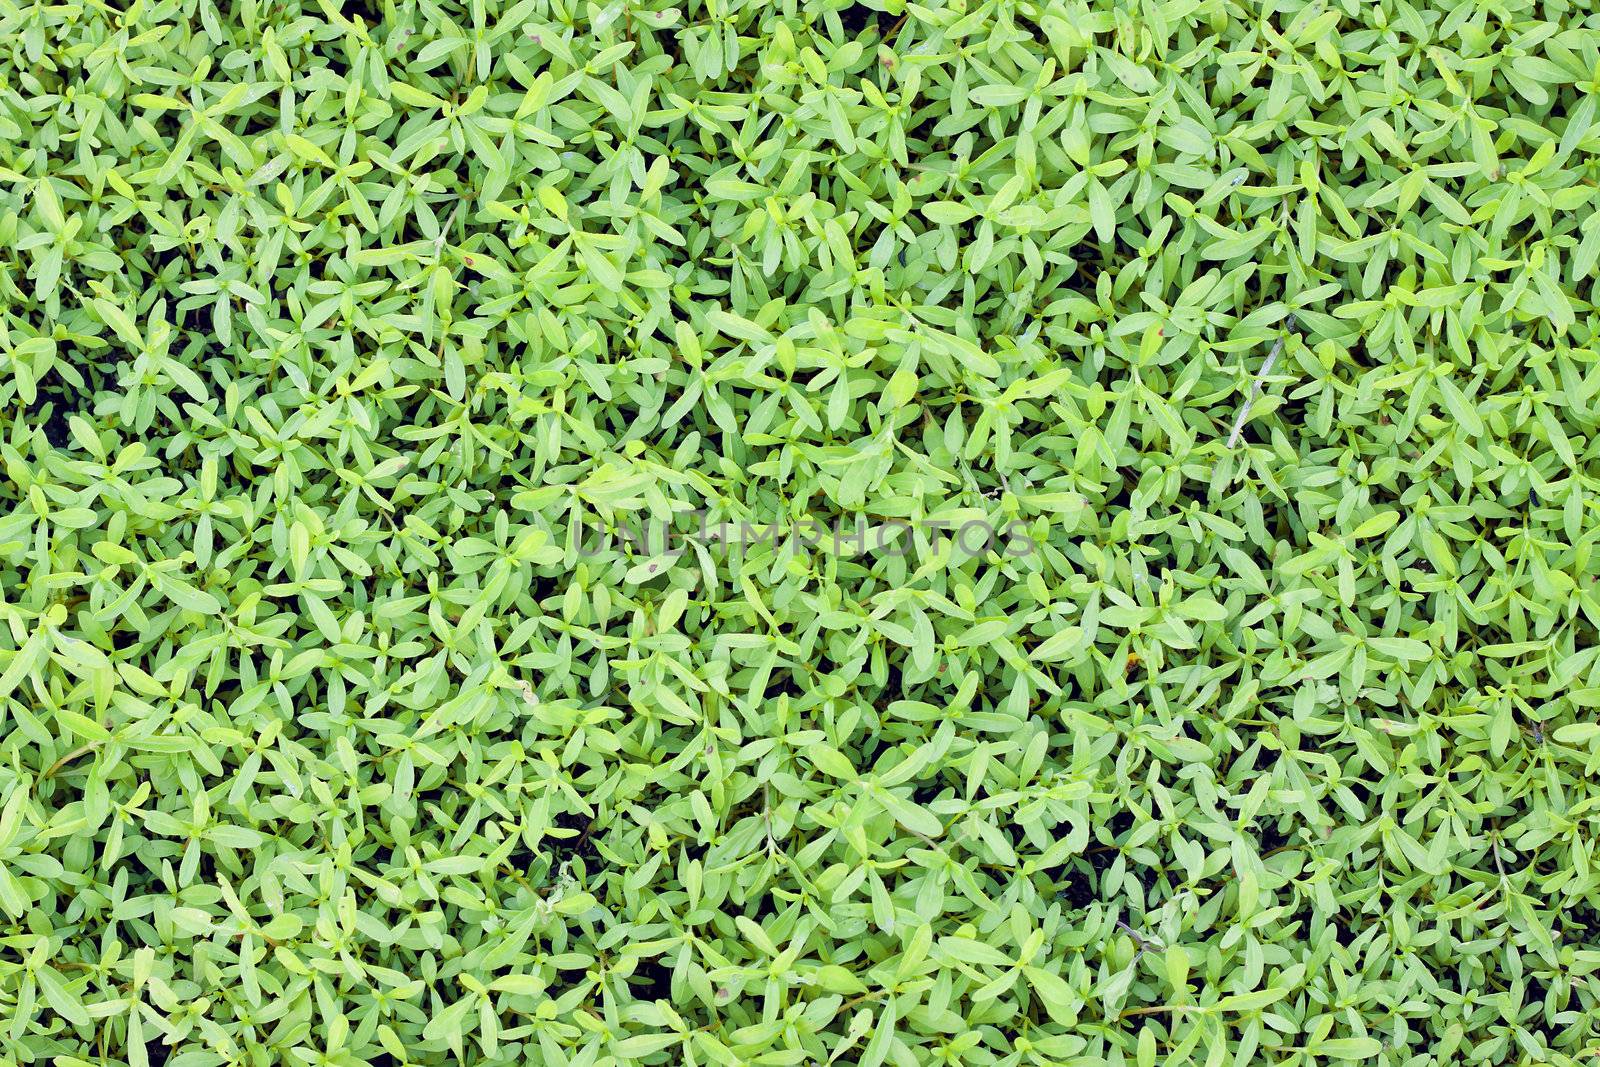 Green lush leaf background by Jaykayl